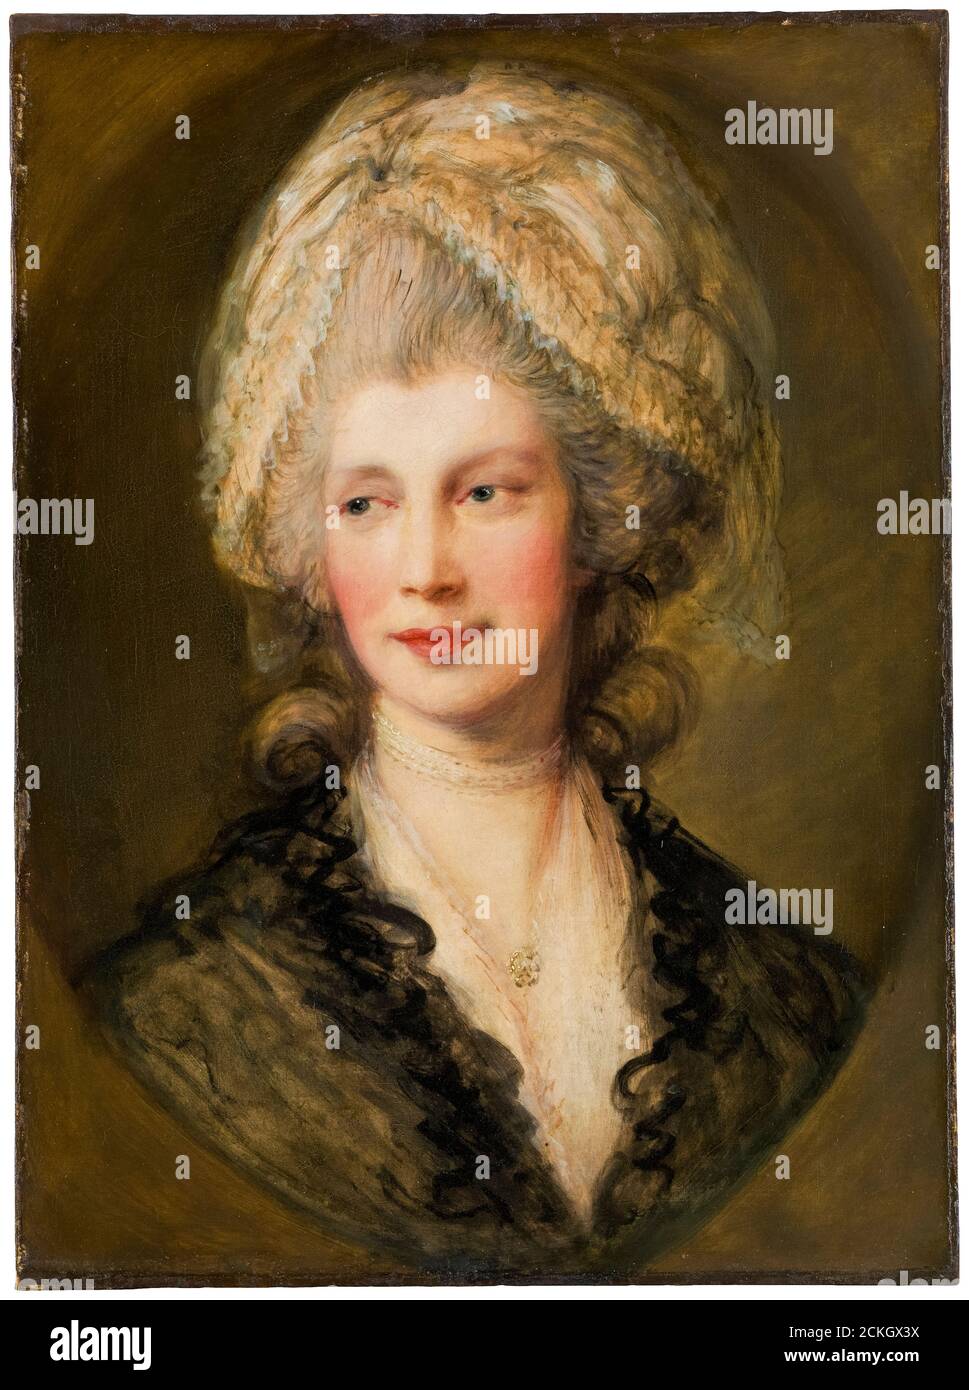 Königin Charlotte von Mecklenburg-Strelitz (1744-1818), Königin Consort des Vereinigten Königreichs, Porträtmalerei von Thomas Gainsborough, nach 1782 Stockfoto